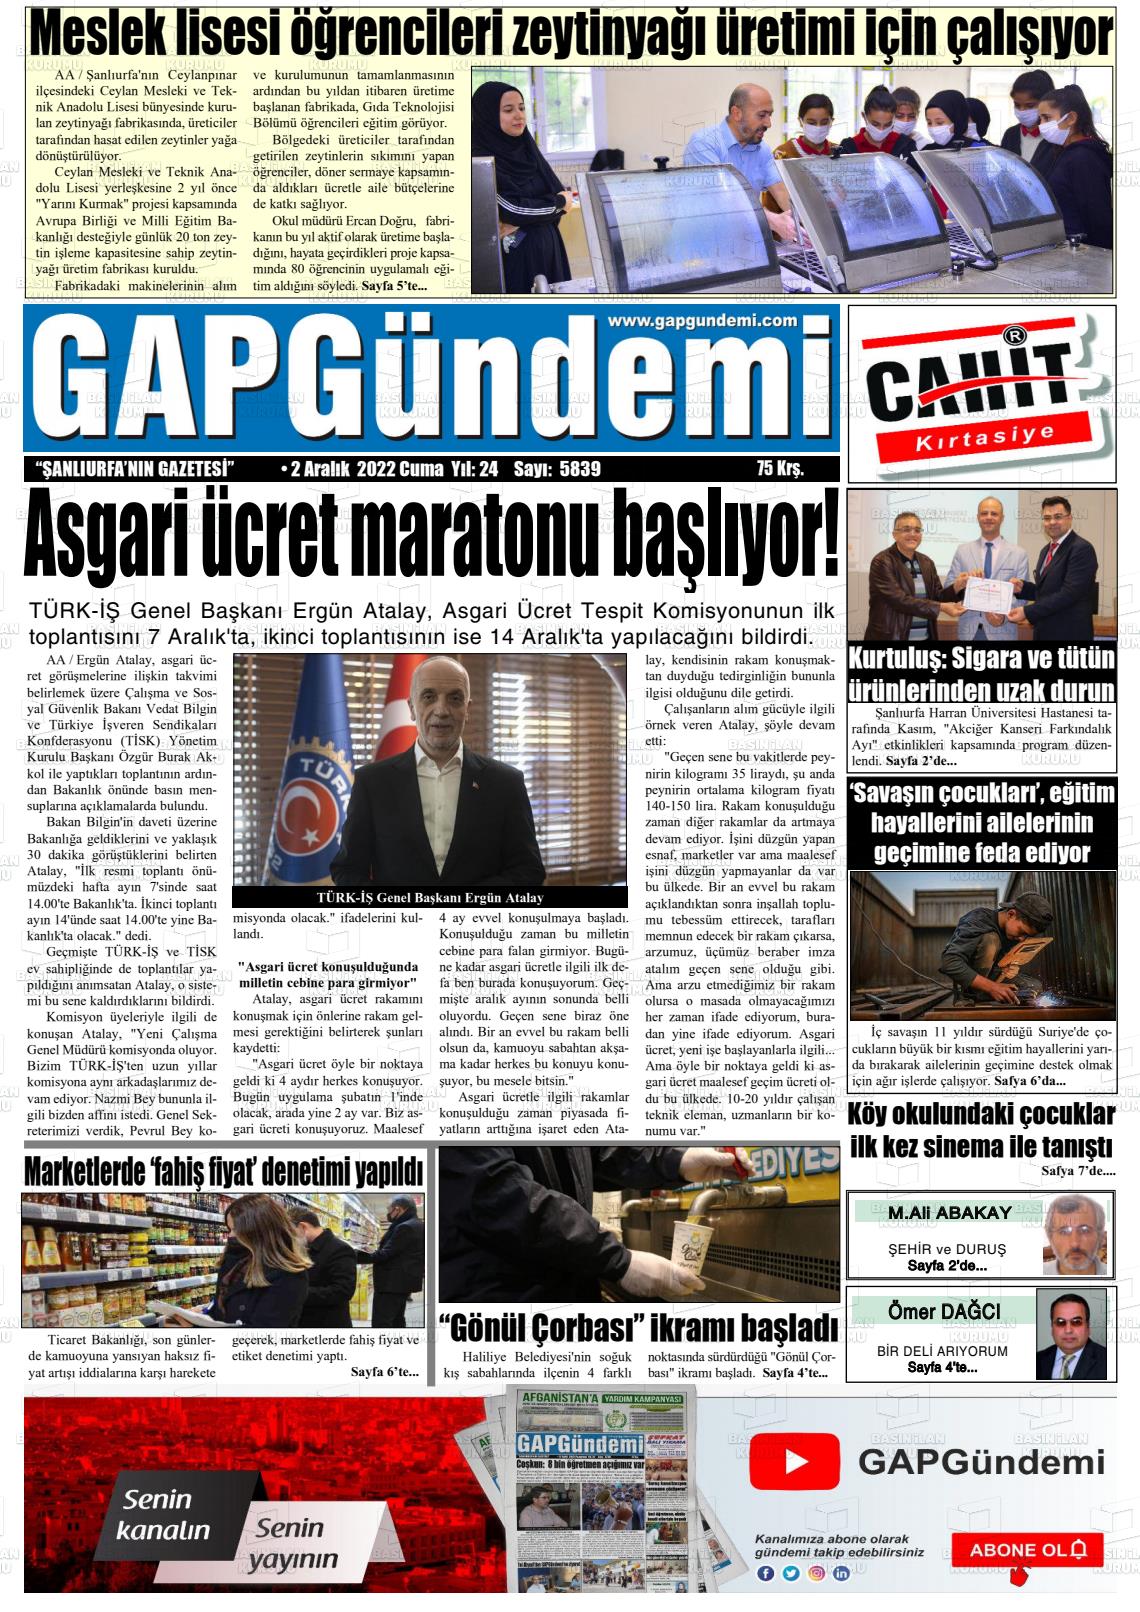 02 Aralık 2022 Gap Gündemi Gazete Manşeti